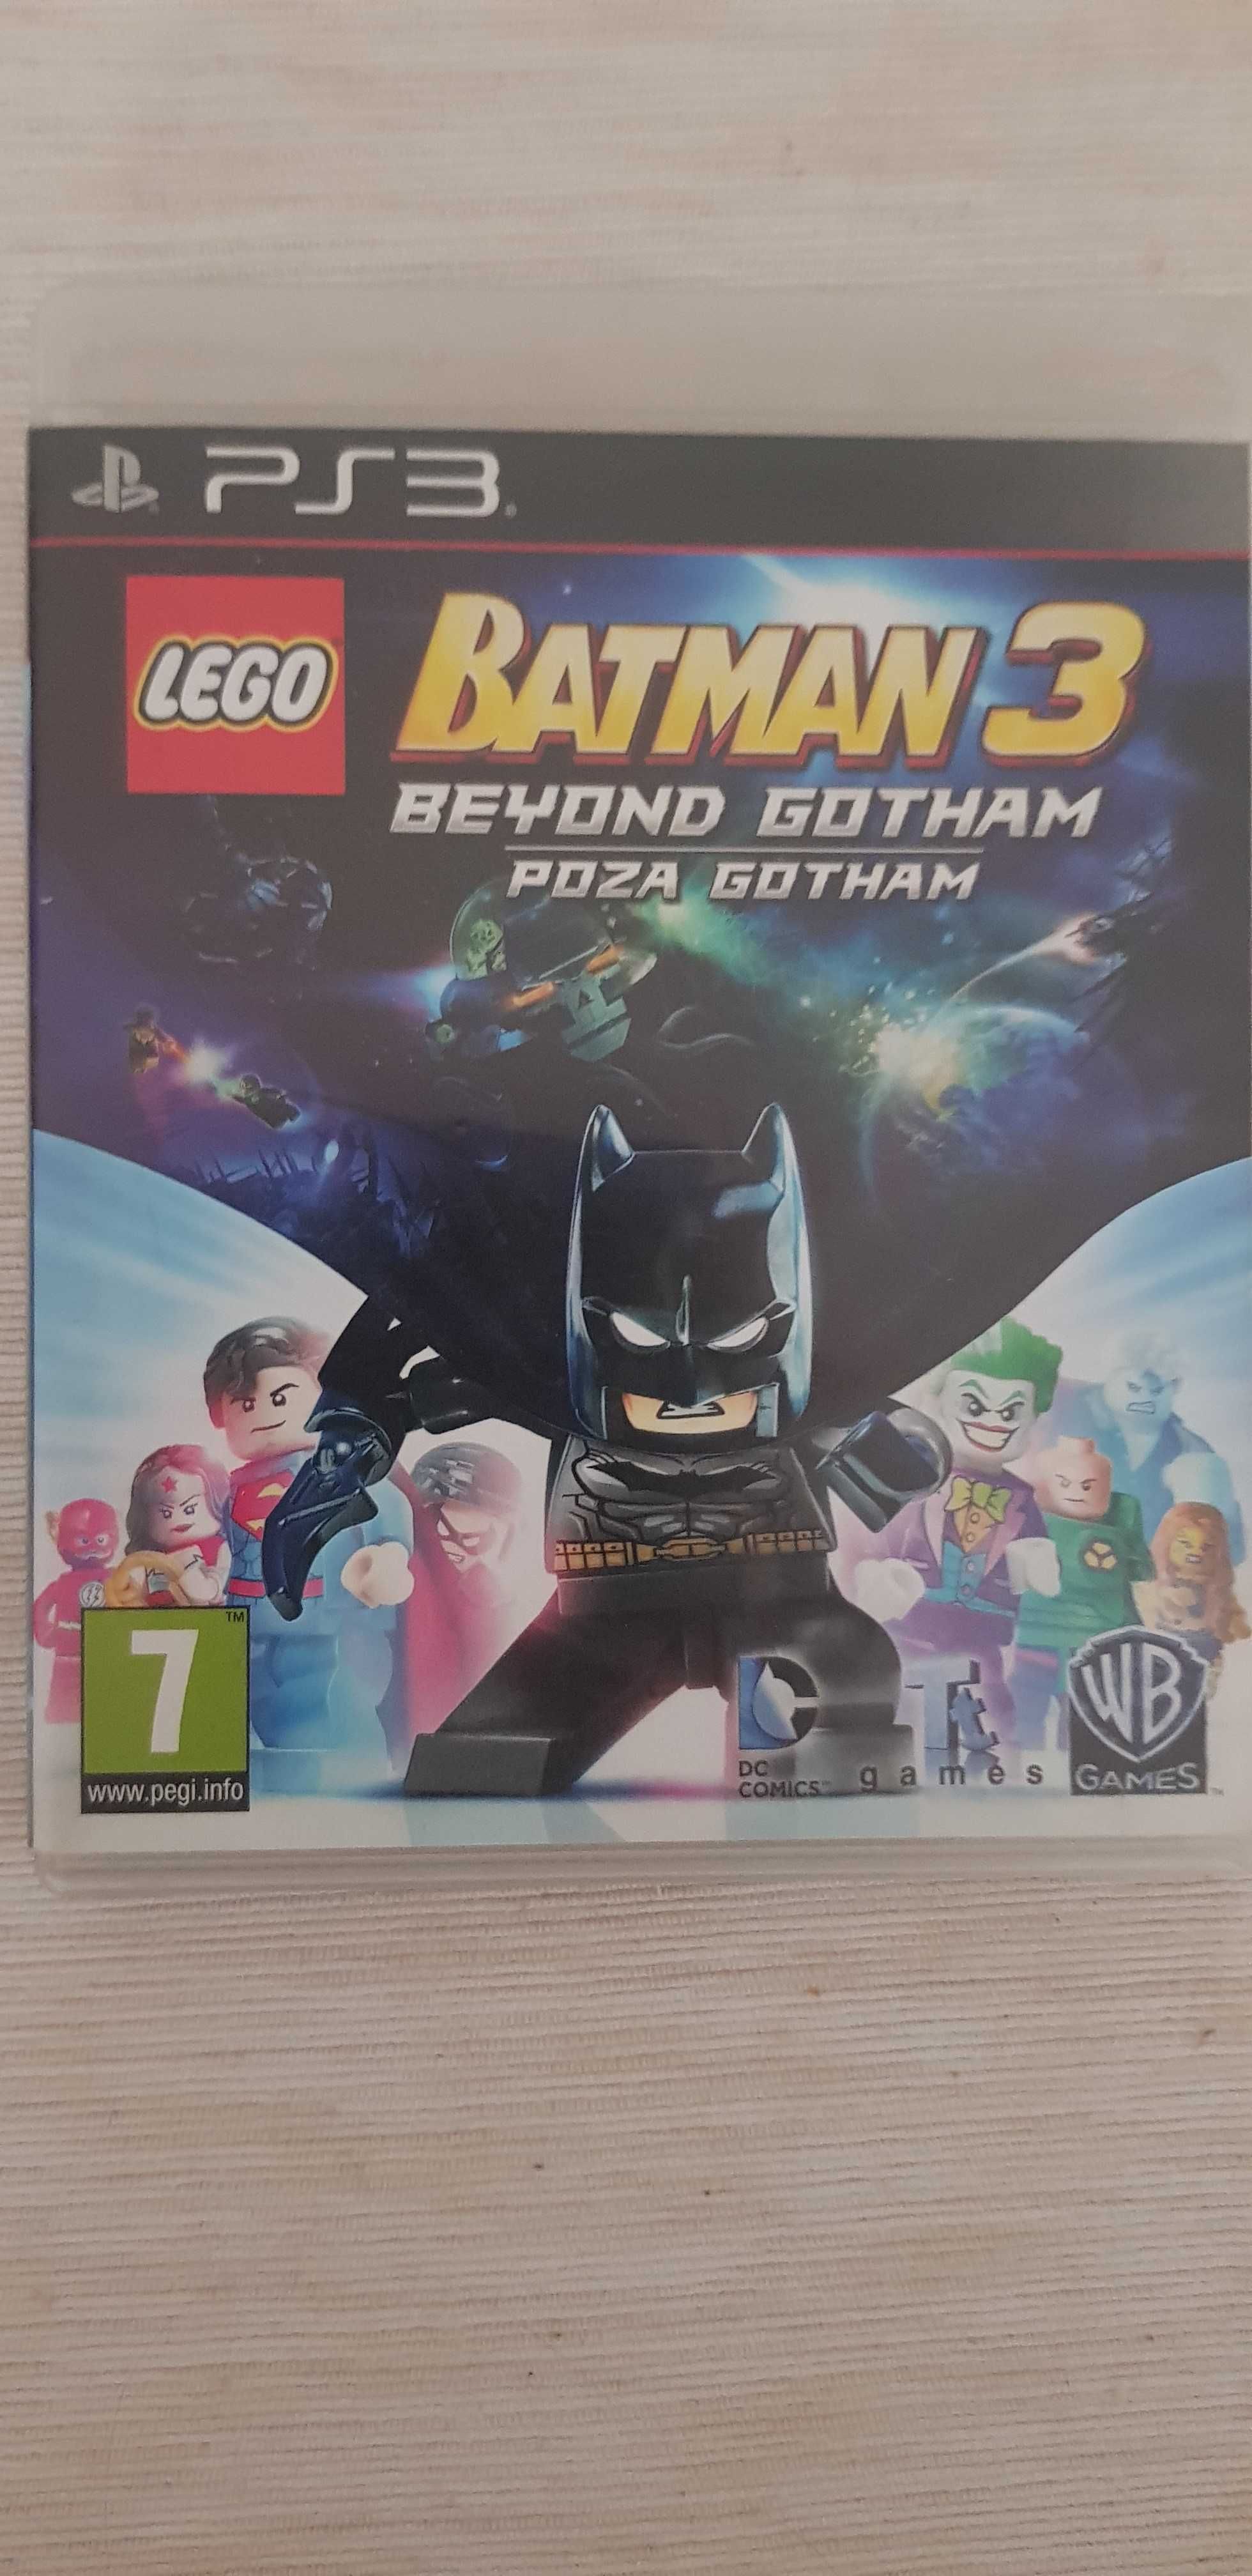 LEGO Batman 3 Poza Gotham (Gra PS3) PL